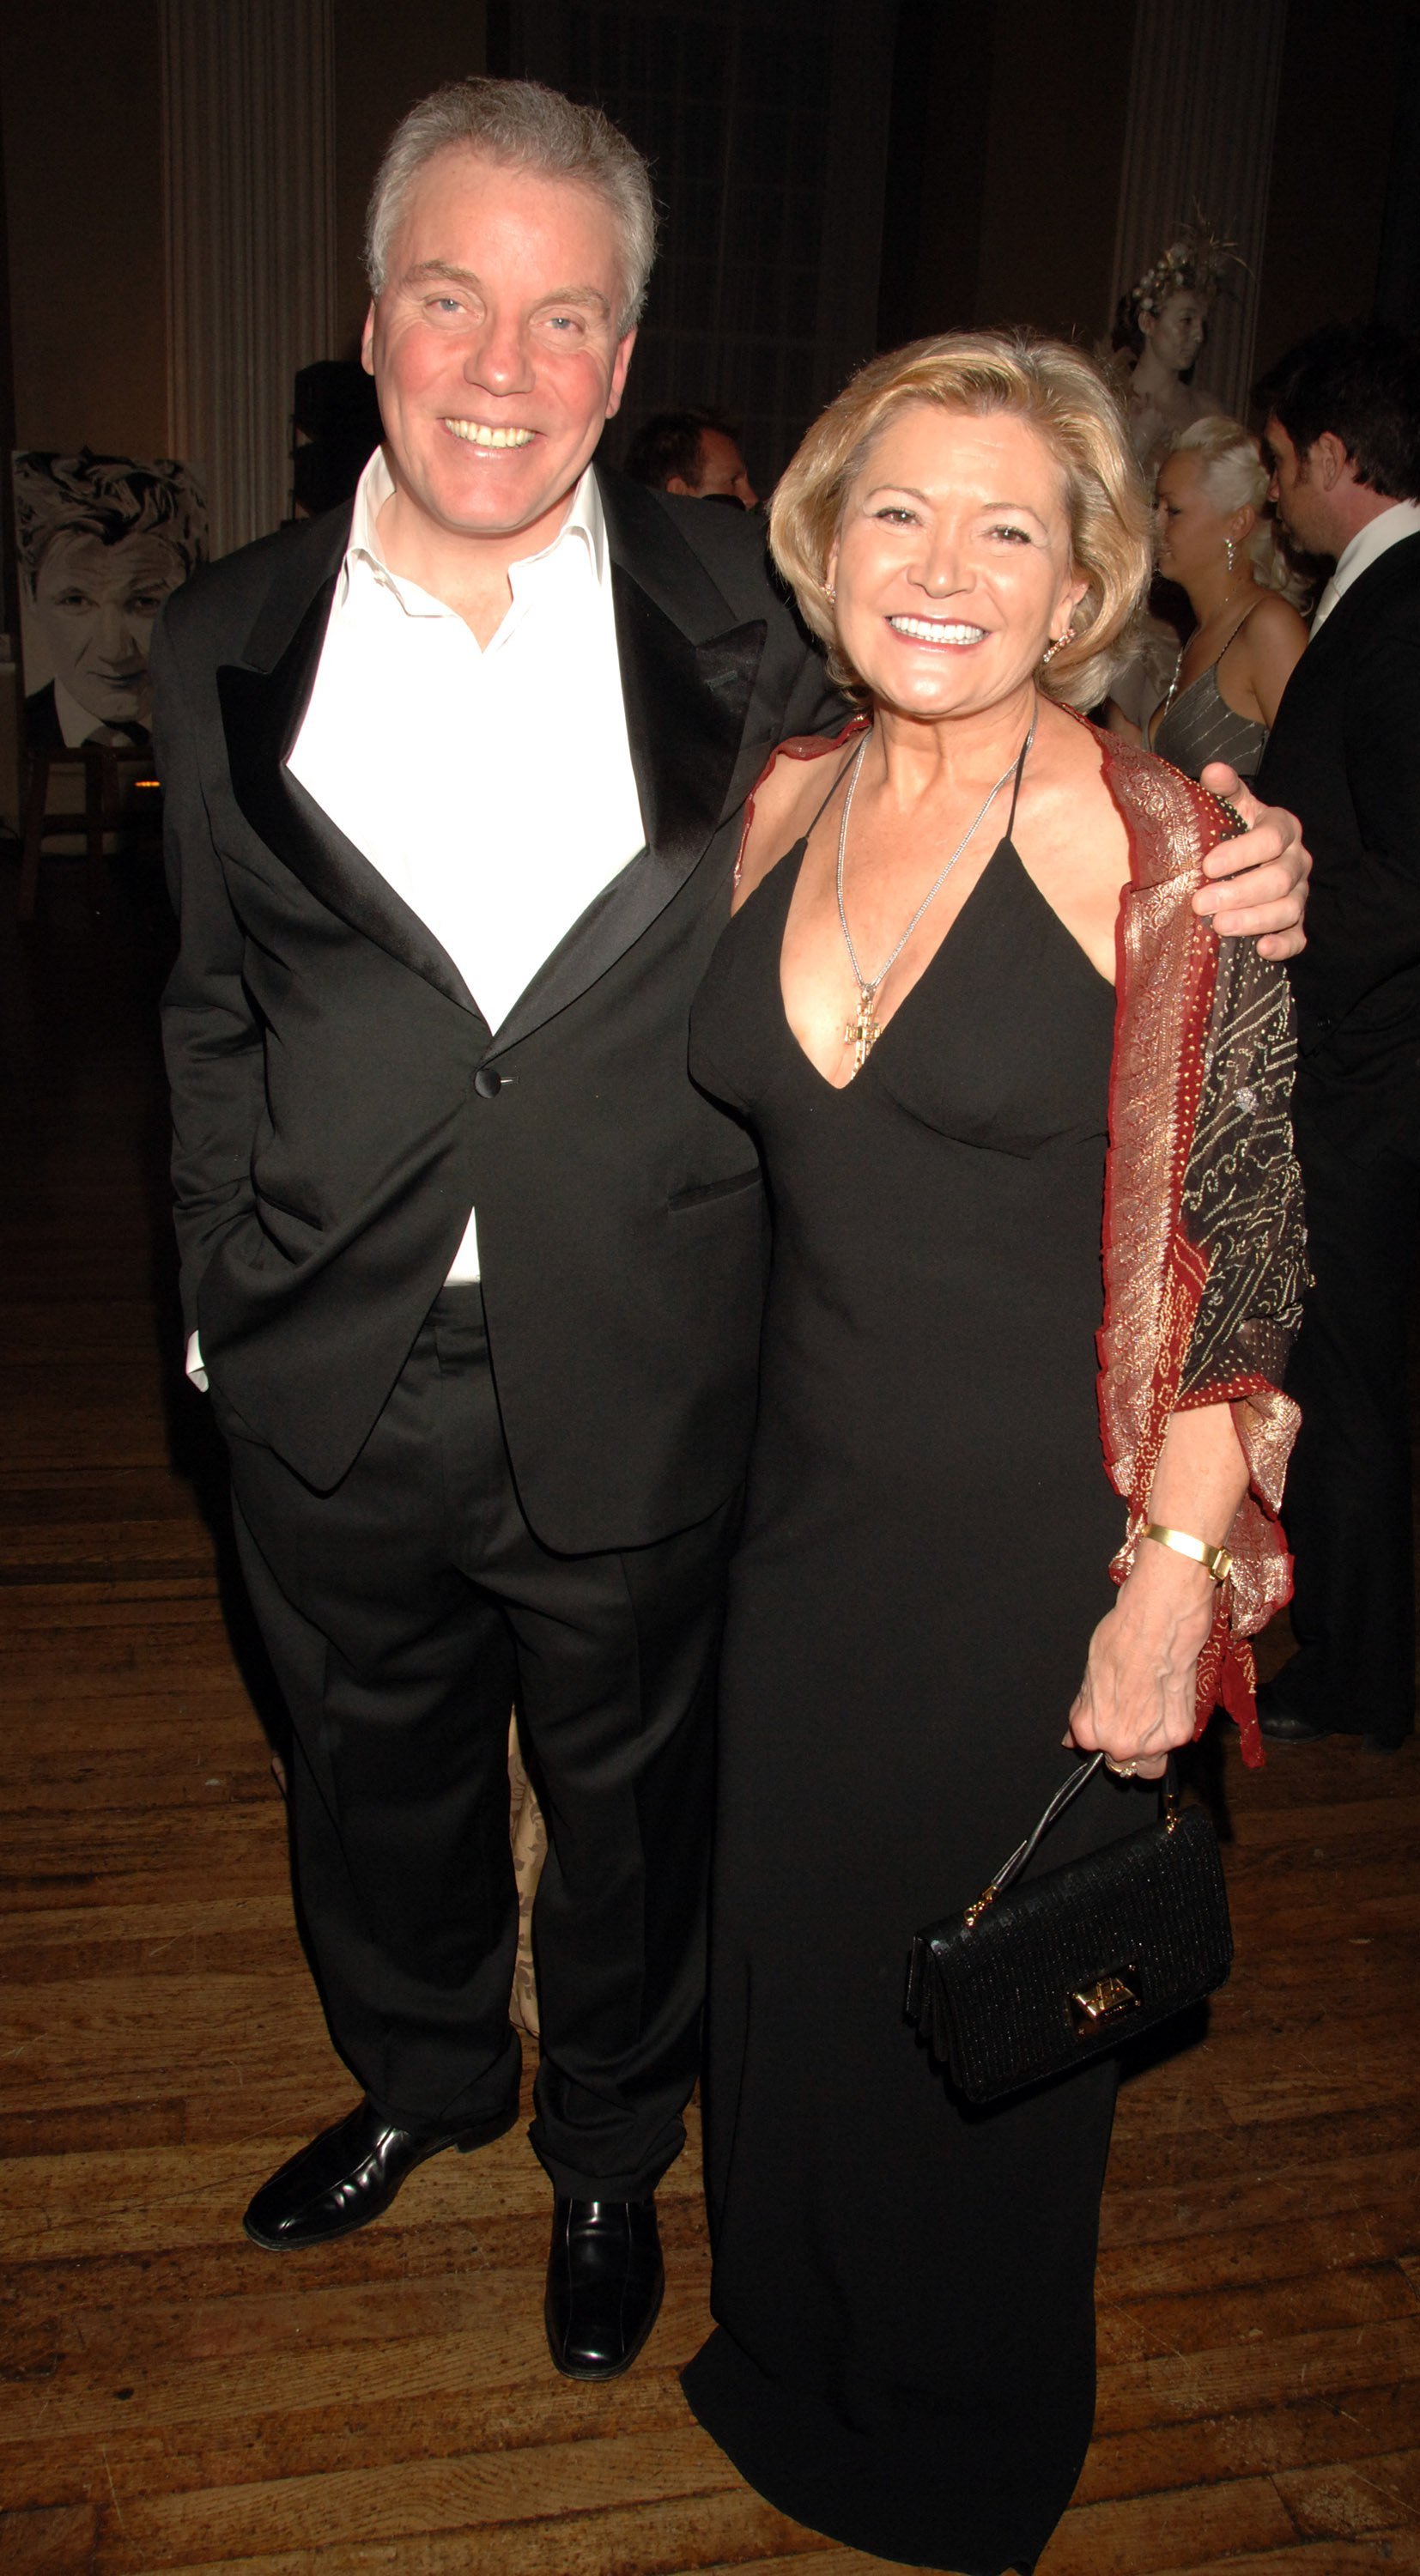 Chris Hutcheson (G) et sa femme Greta assistent à la fête du 40e anniversaire du célèbre chef Gordon Ramsay au Banqueting House à Whitehall Place le 11 novembre 2006 à Londres, Angleterre. | Source : Getty Images